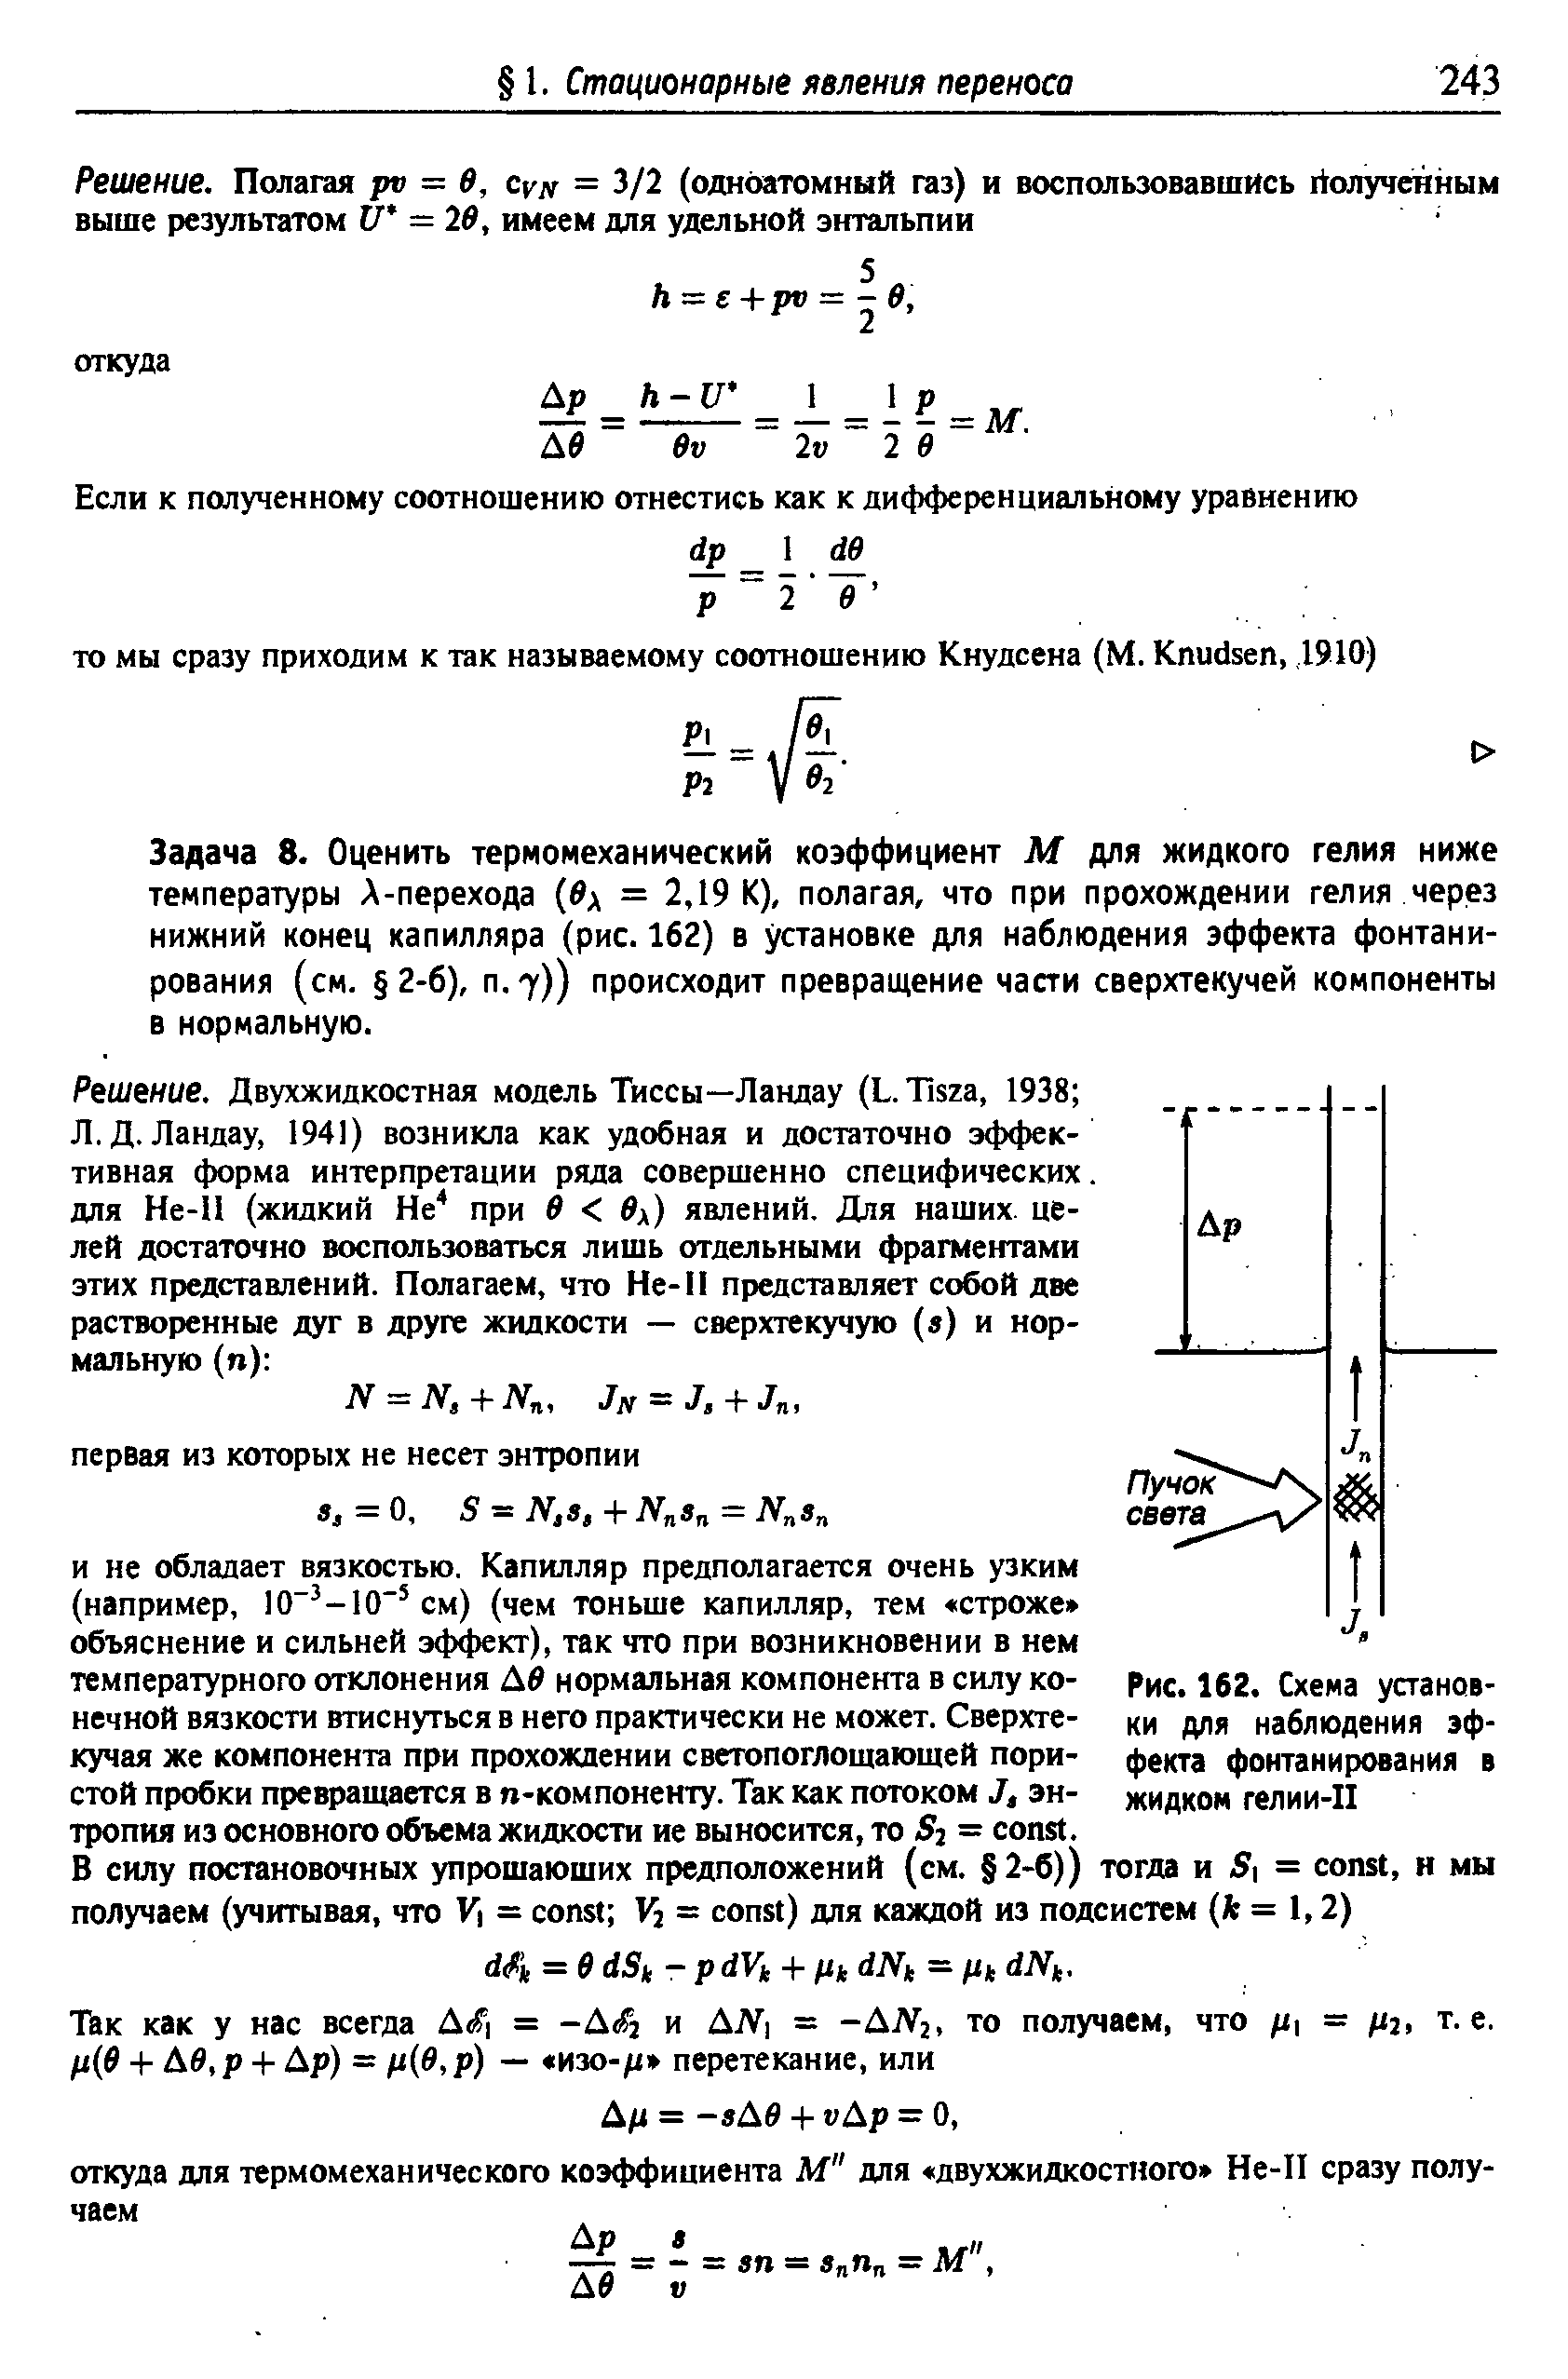 Рис. 162. Схема уаанов-ки для наблюдения эффекта фонтанирования в жидком гелии-П
